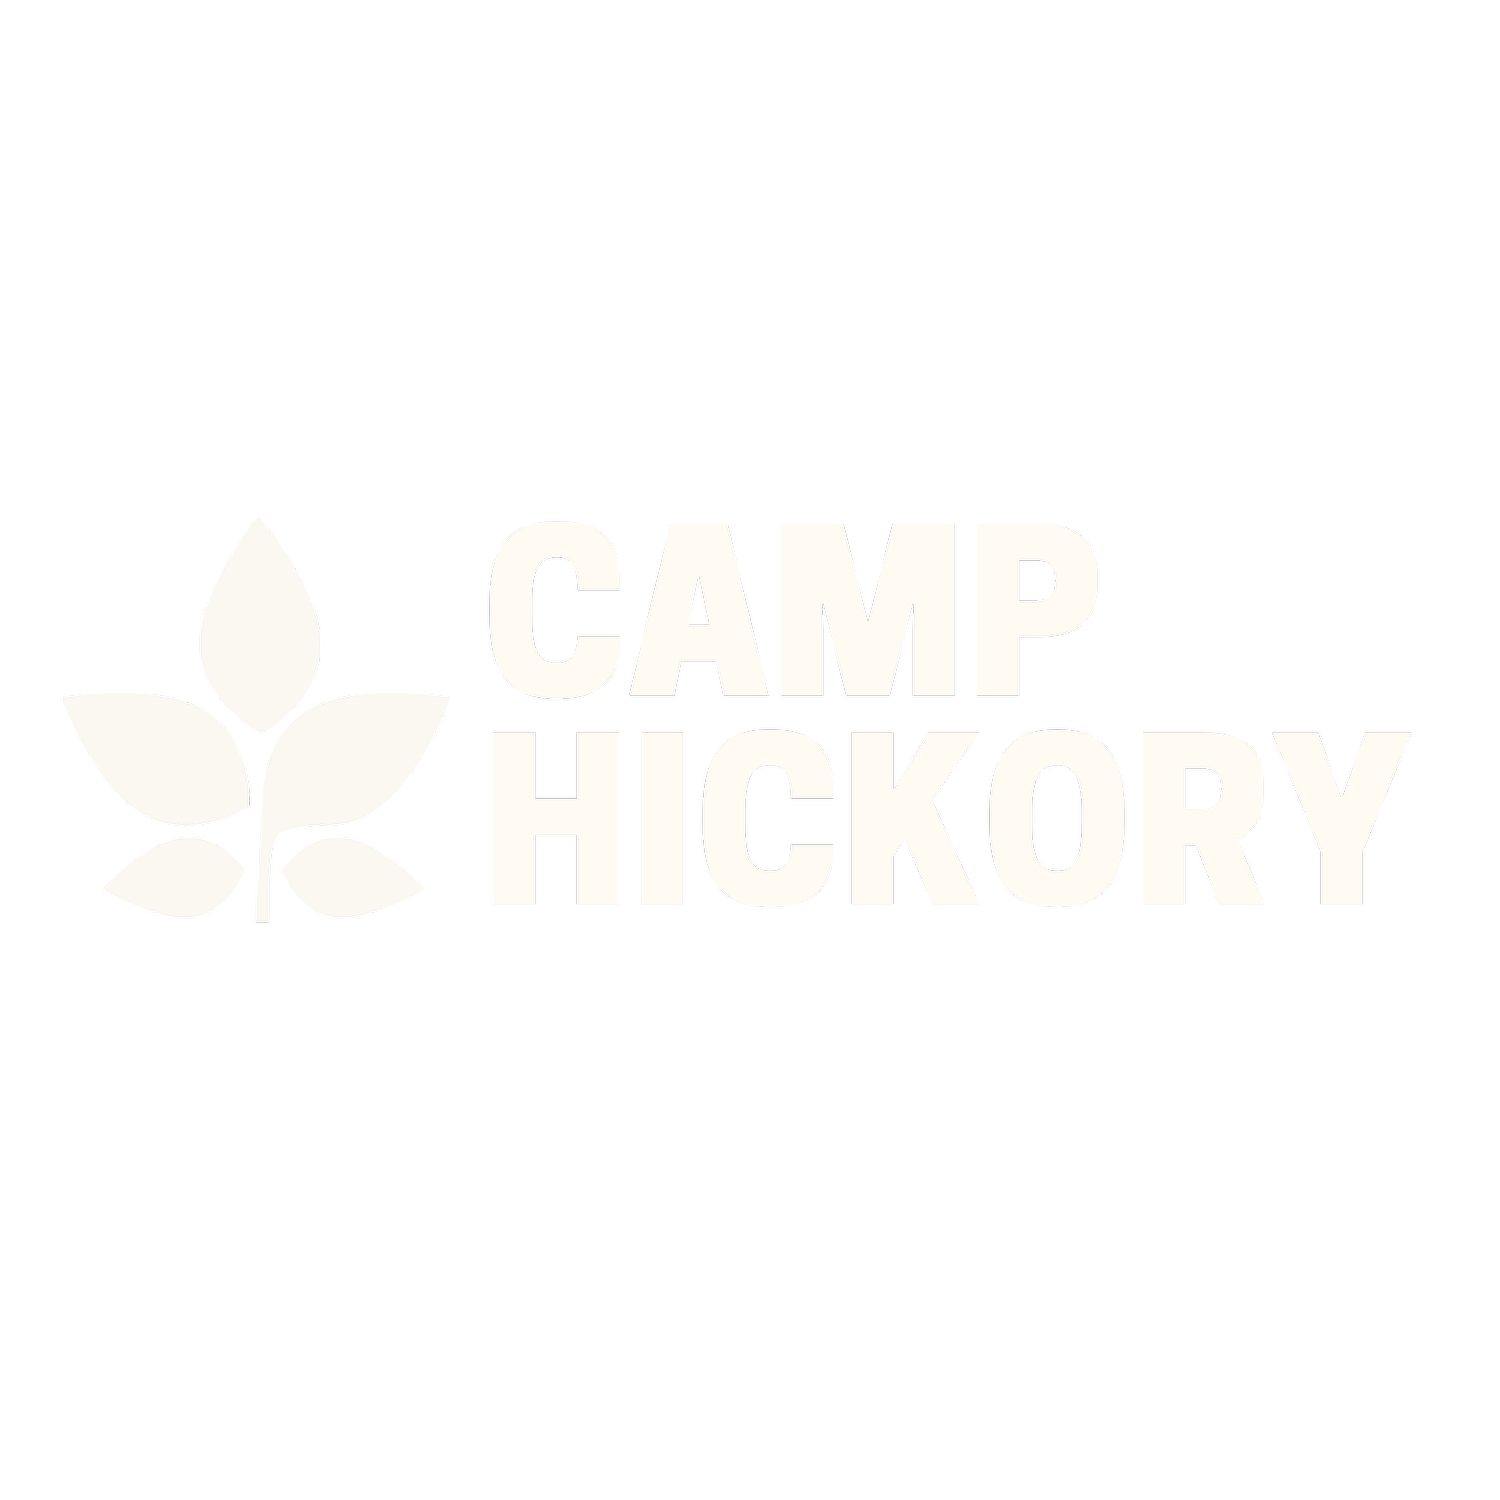 Camp Hickory